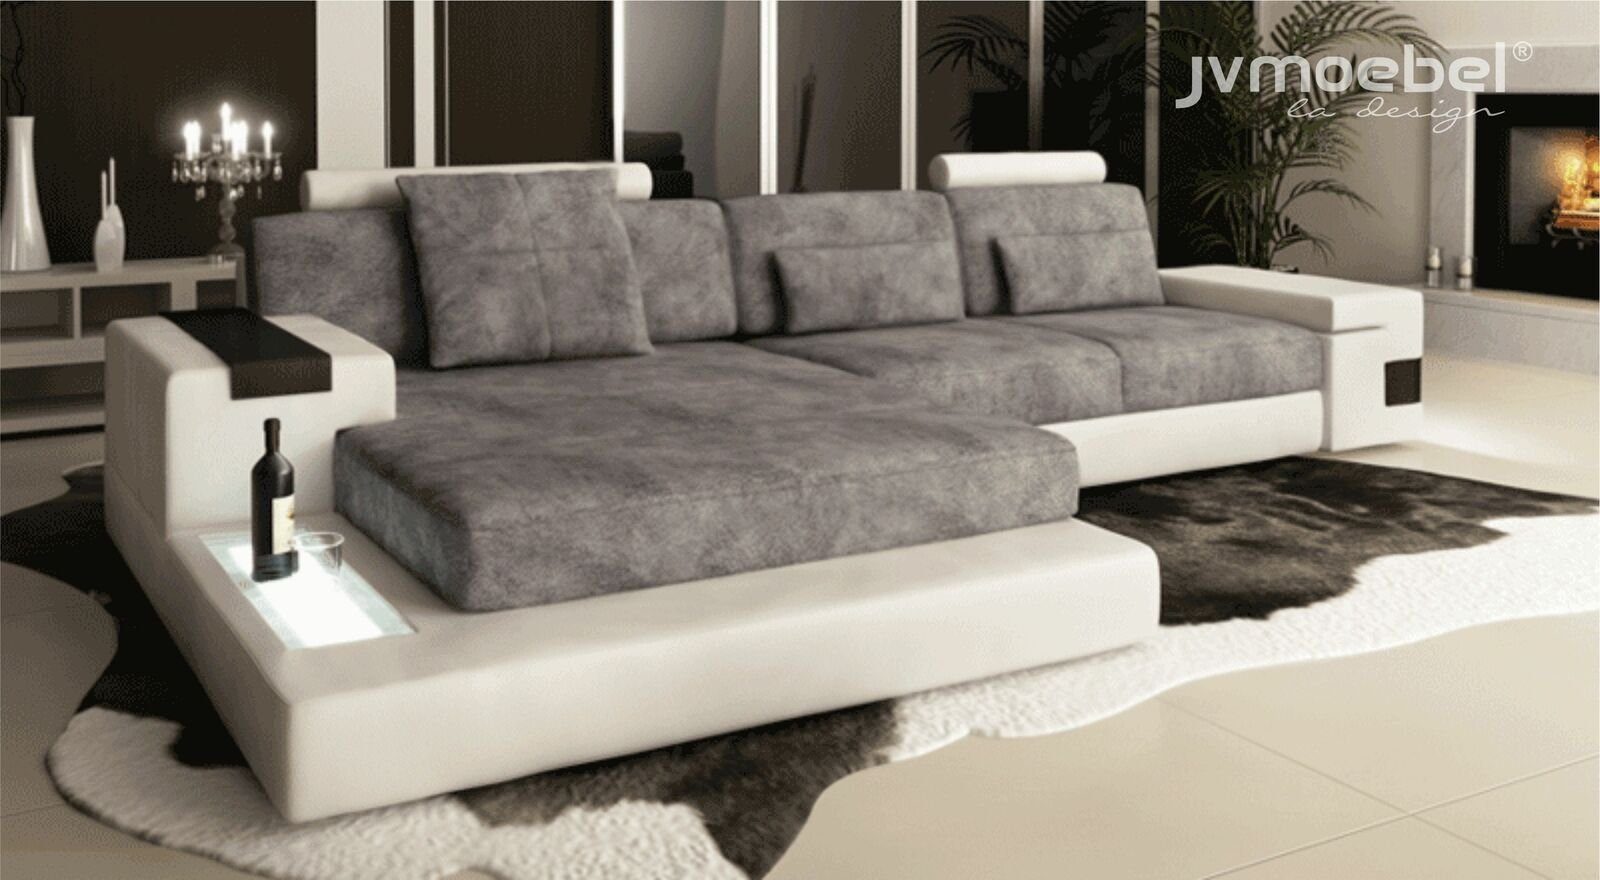 JVmoebel Ecksofa Ecksofa Wohnzimmer L-Form Polster Europe Sofa Grau/Weiß in Made TextilLeder Design